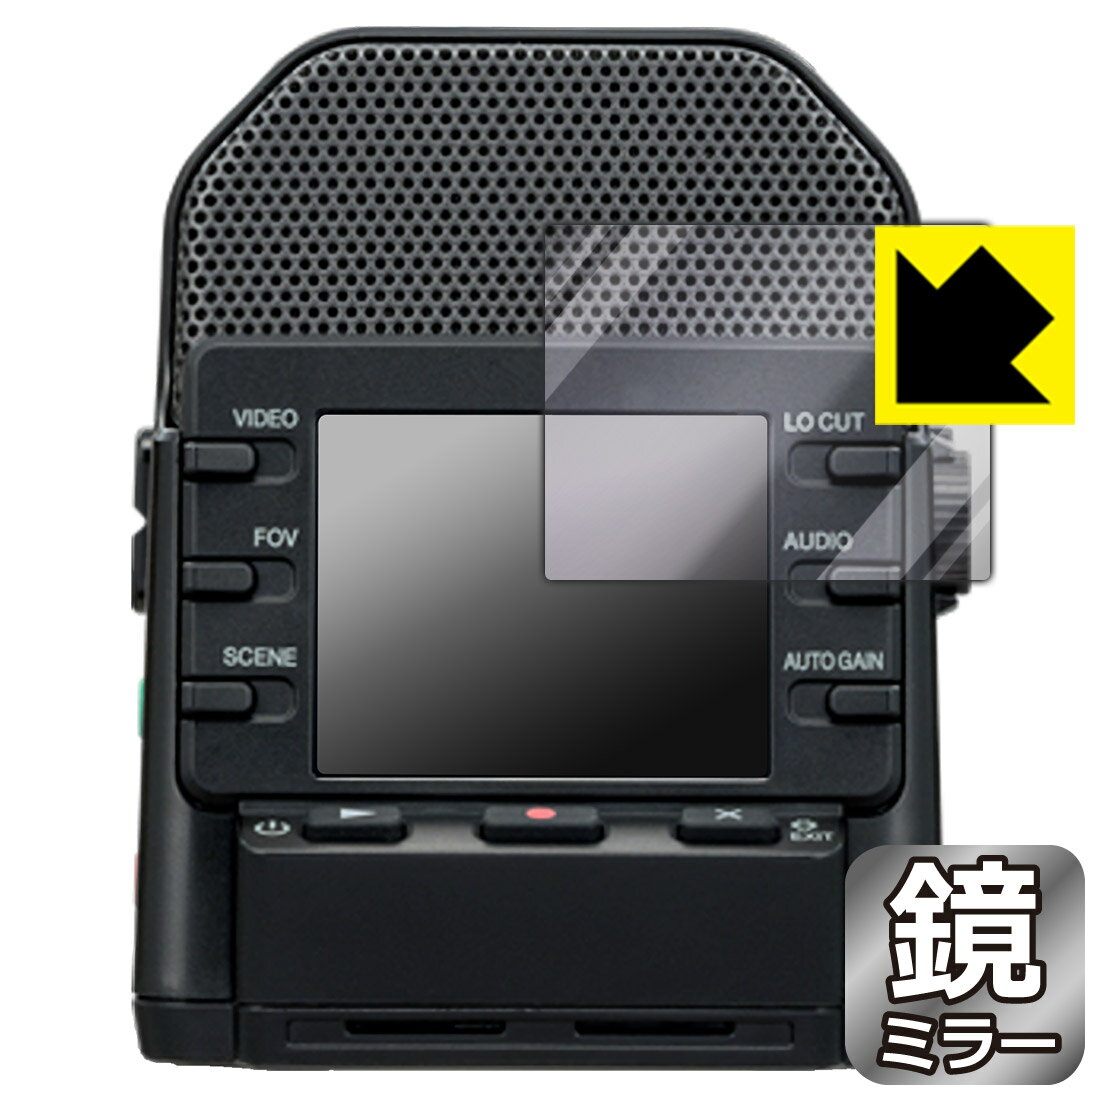 【スーパーSALE 10%OFF】Mirror Shield 保護フィルム ZOOM Q2n-4K (ディスプレイ用) 日本製 自社製造直販